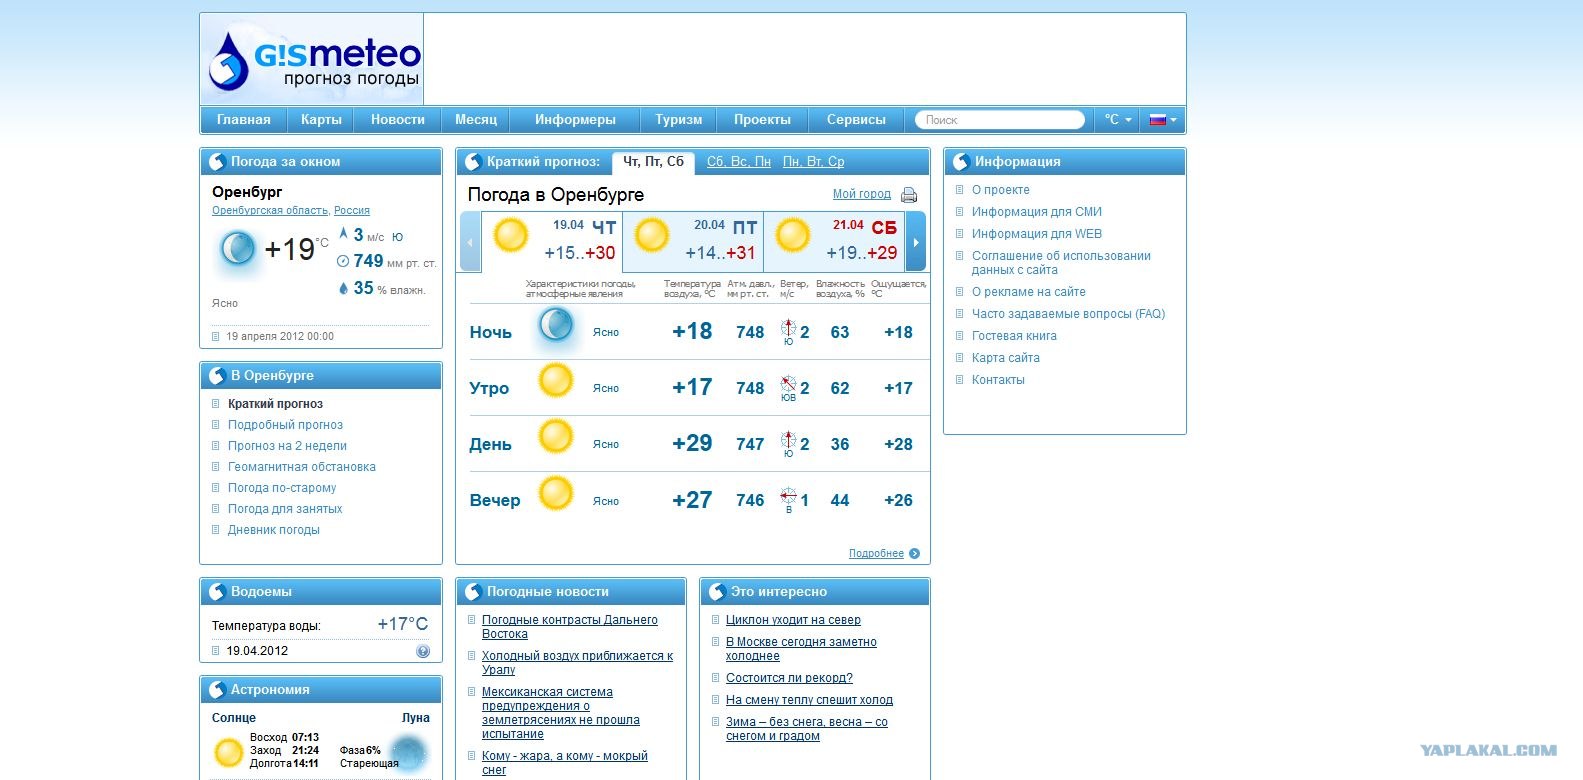 Погода в оренбурге на 3 по часам. Погода в Оренбурге. Прогноз погоды в Оренбурге. Гисметео Оренбург. Погода в Оренбурге на сегодня.